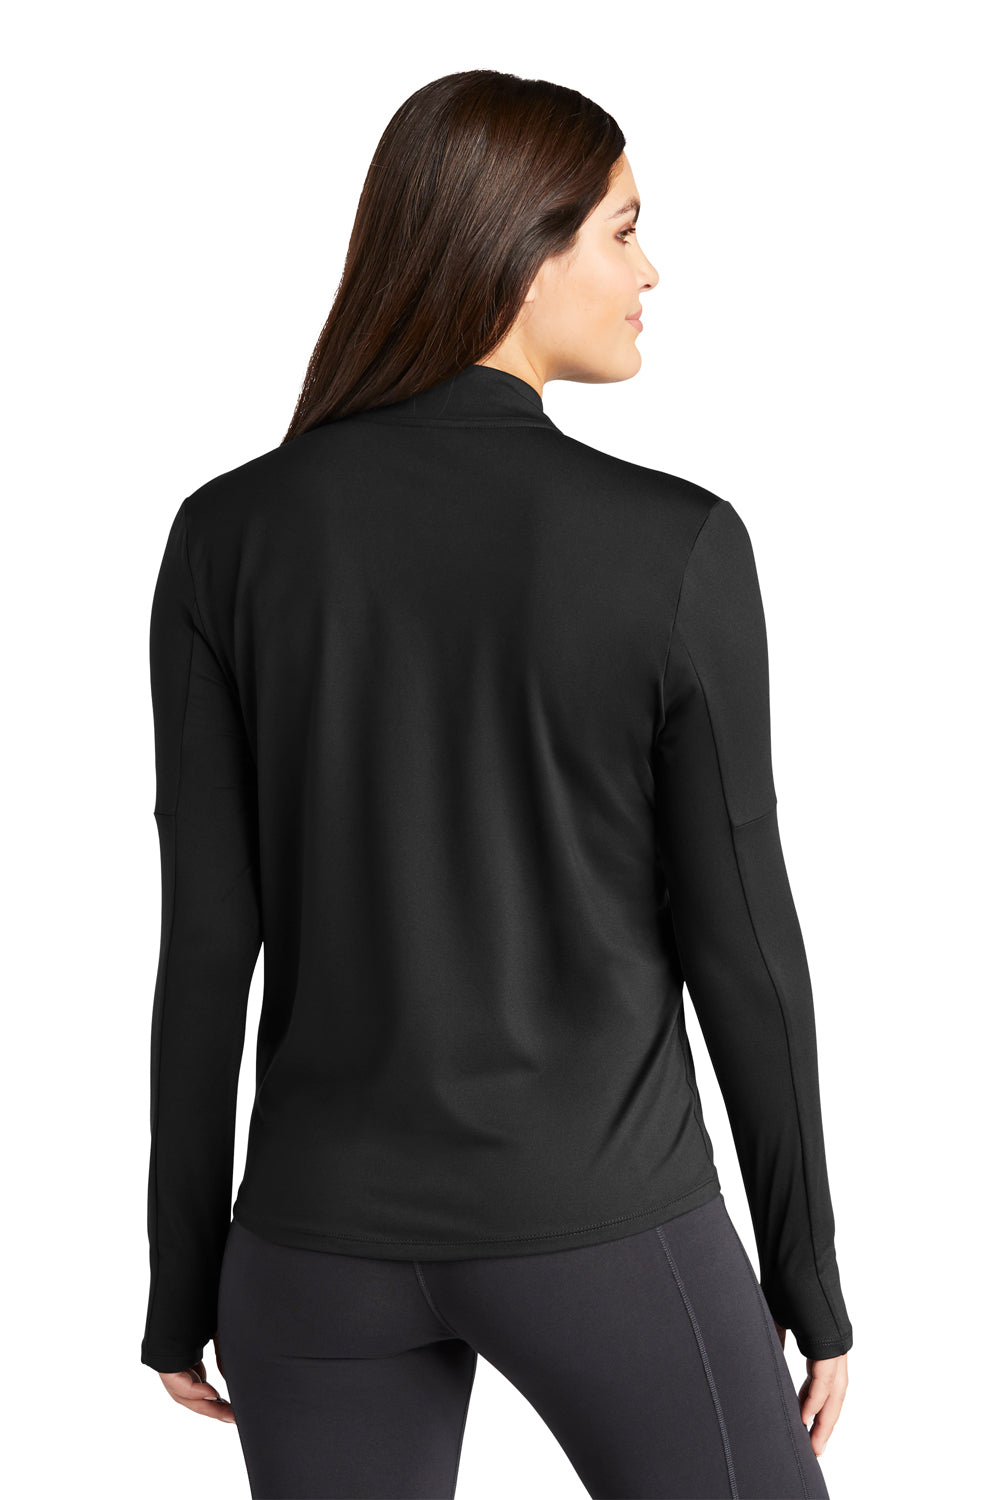 Nike NKDH4951 Womens Element Dri-Fit Moisture Wicking 1/4 Zip Sweatshirt Black Model Back